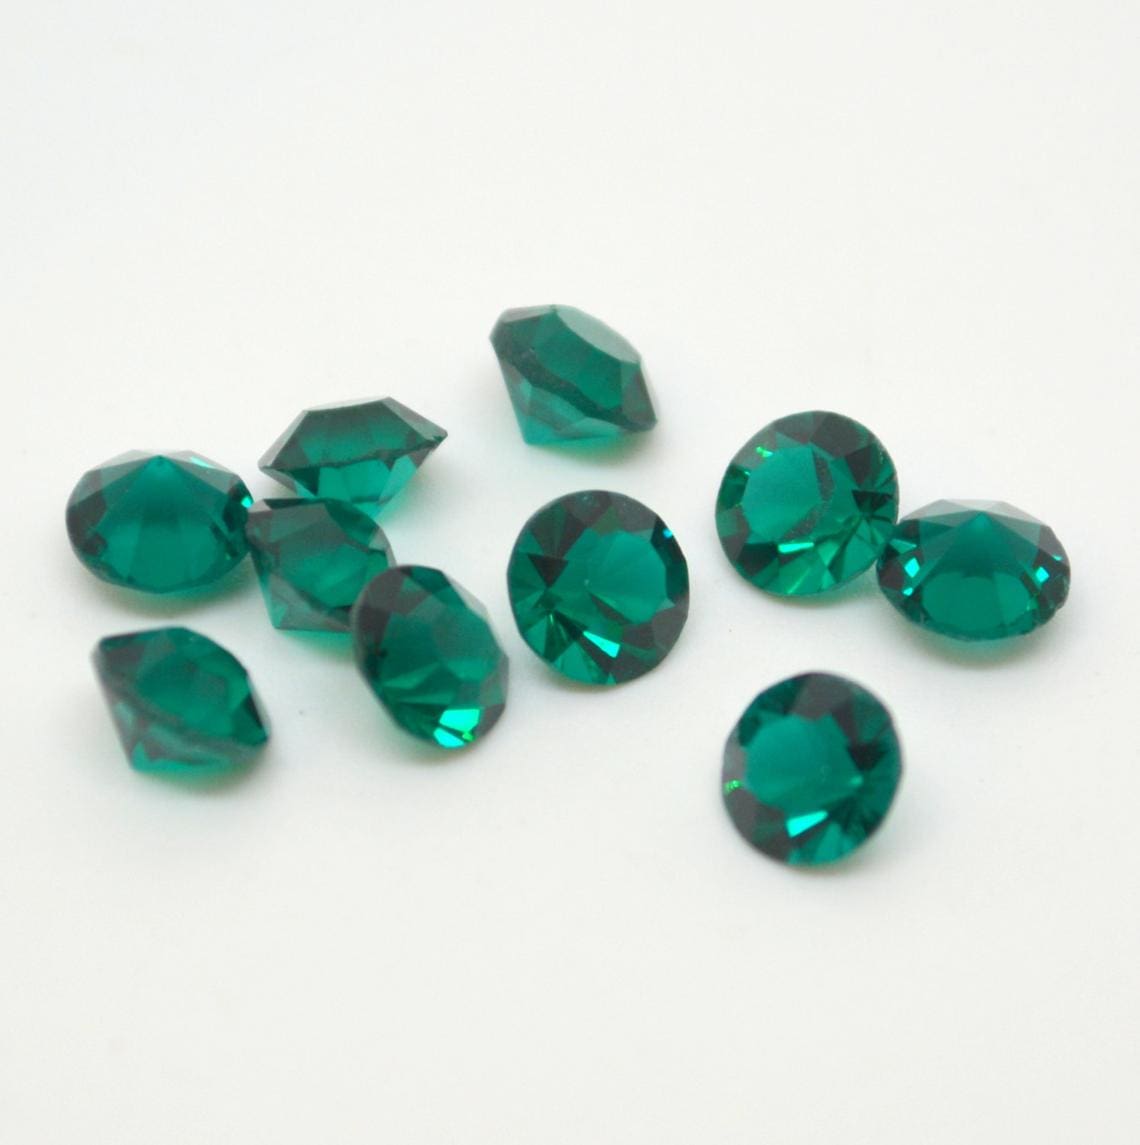 Pedras esmeraldas naturais de tamanhos diferentes